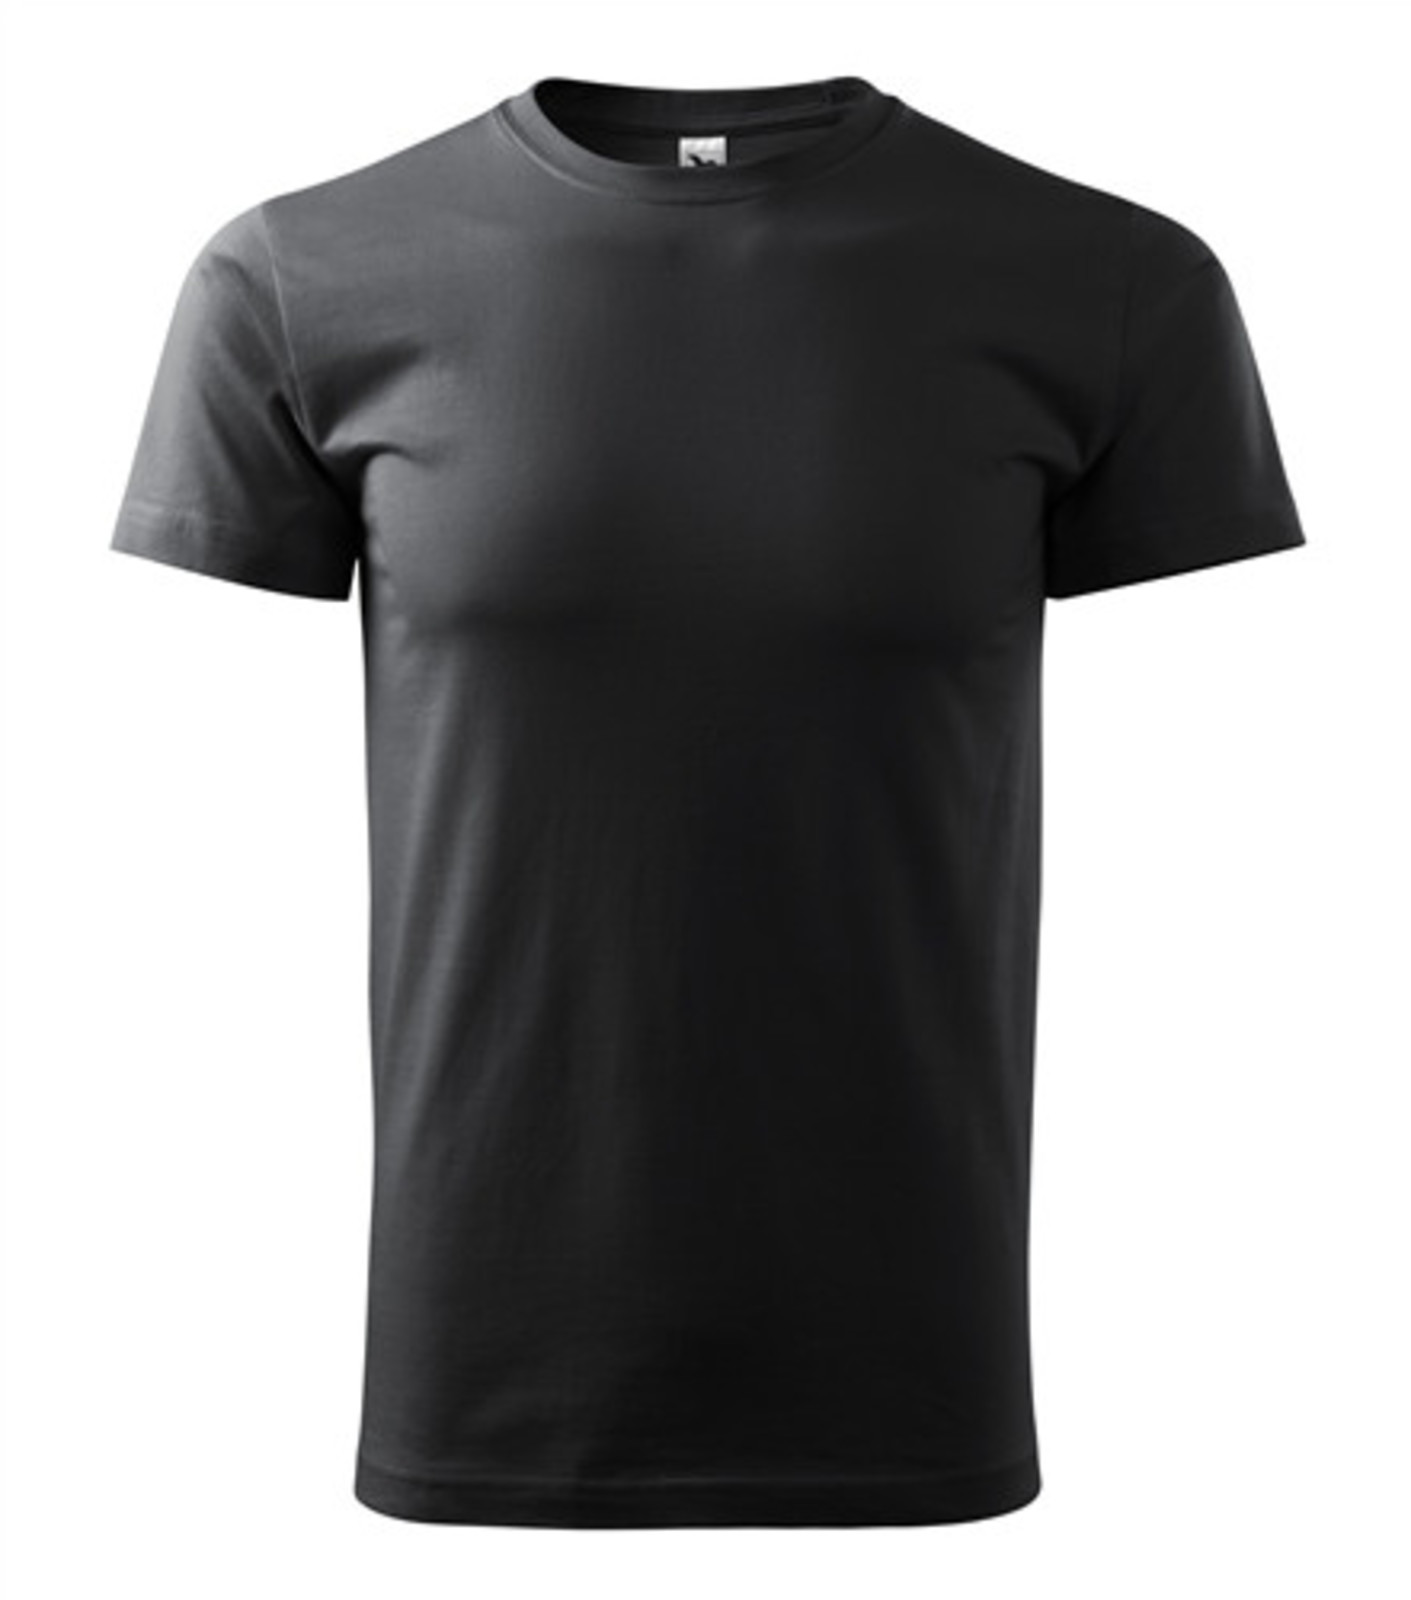 Pánske tričko Malfini Basic 129 - veľkosť: S, farba: šedá ebony